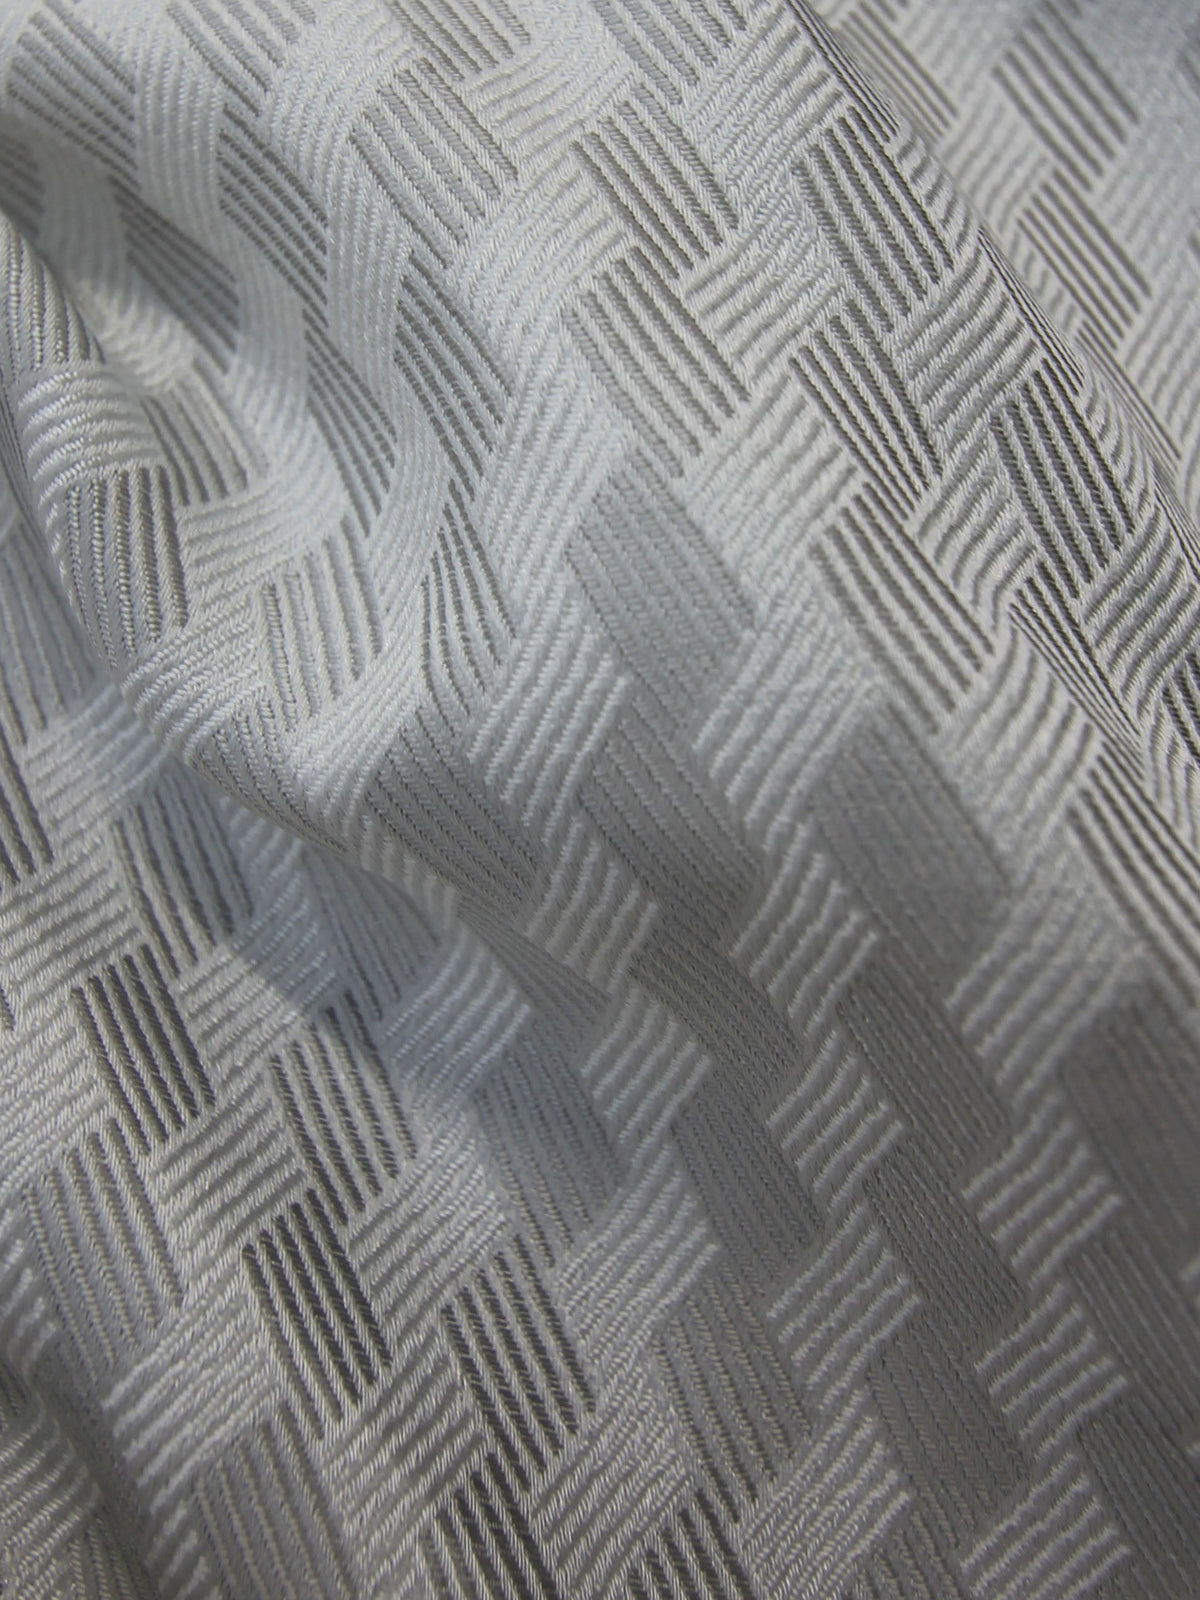 Silver Waistcoat Fabric - Sorrento